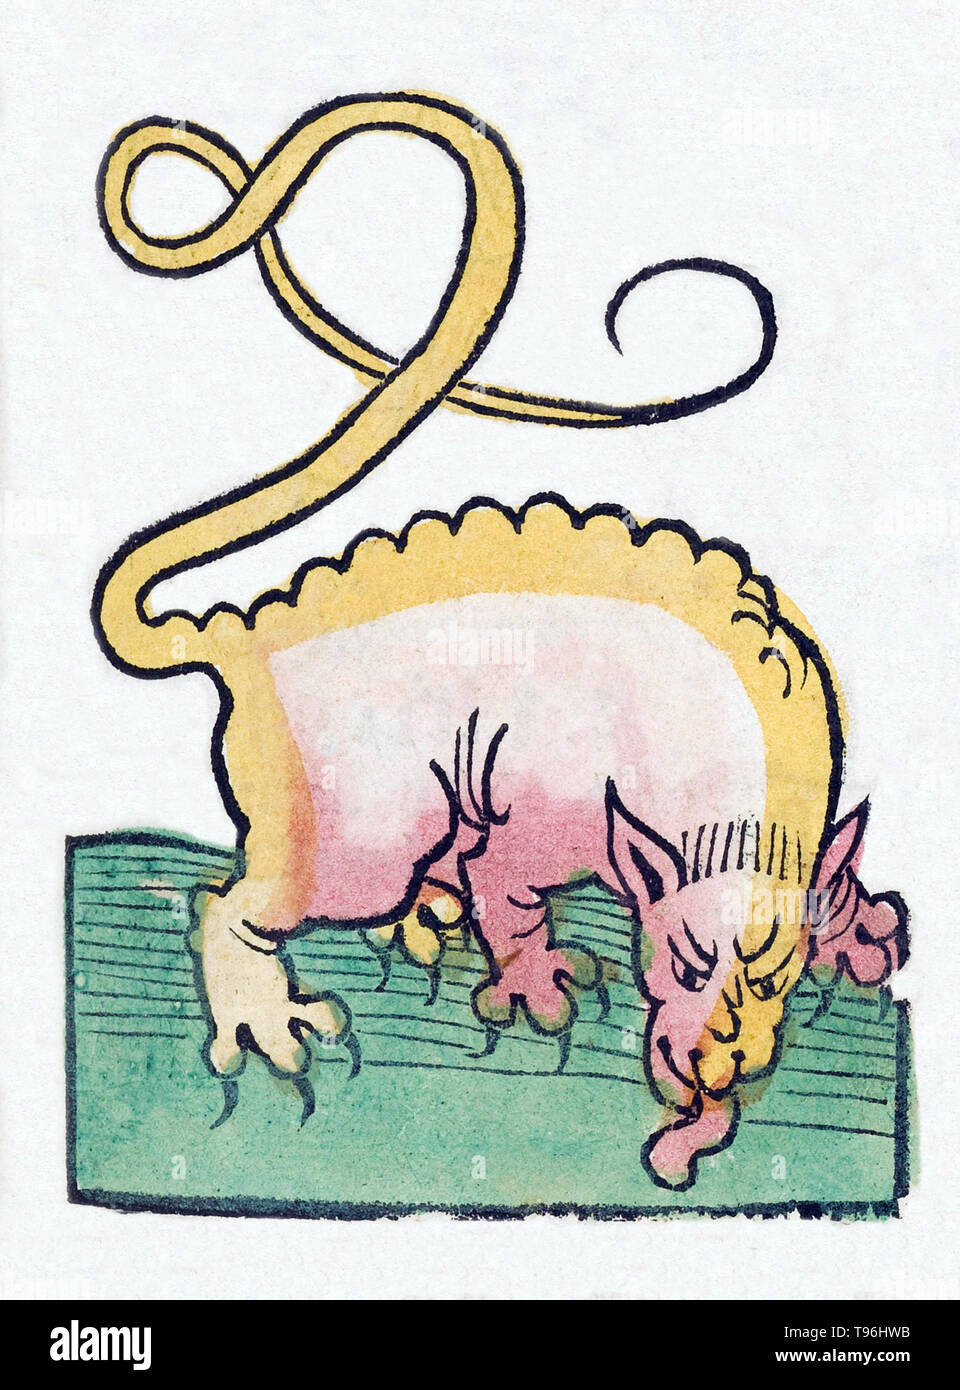 Créature mythique. L'Hortus Sanitatis (Jardin de la santé), la première encyclopédie d'histoire naturelle, a été publié par Jacob Meydenbach en Allemagne, 1491. Il décrit des plantes et animaux (à la fois réelle et mythique) avec minéraux et de divers métiers, avec leur valeur thérapeutique et de la méthode de préparation. La gravure sur bois à la main, les illustrations sont stylisées mais souvent facilement reconnaissable. L'édition 1547. Banque D'Images